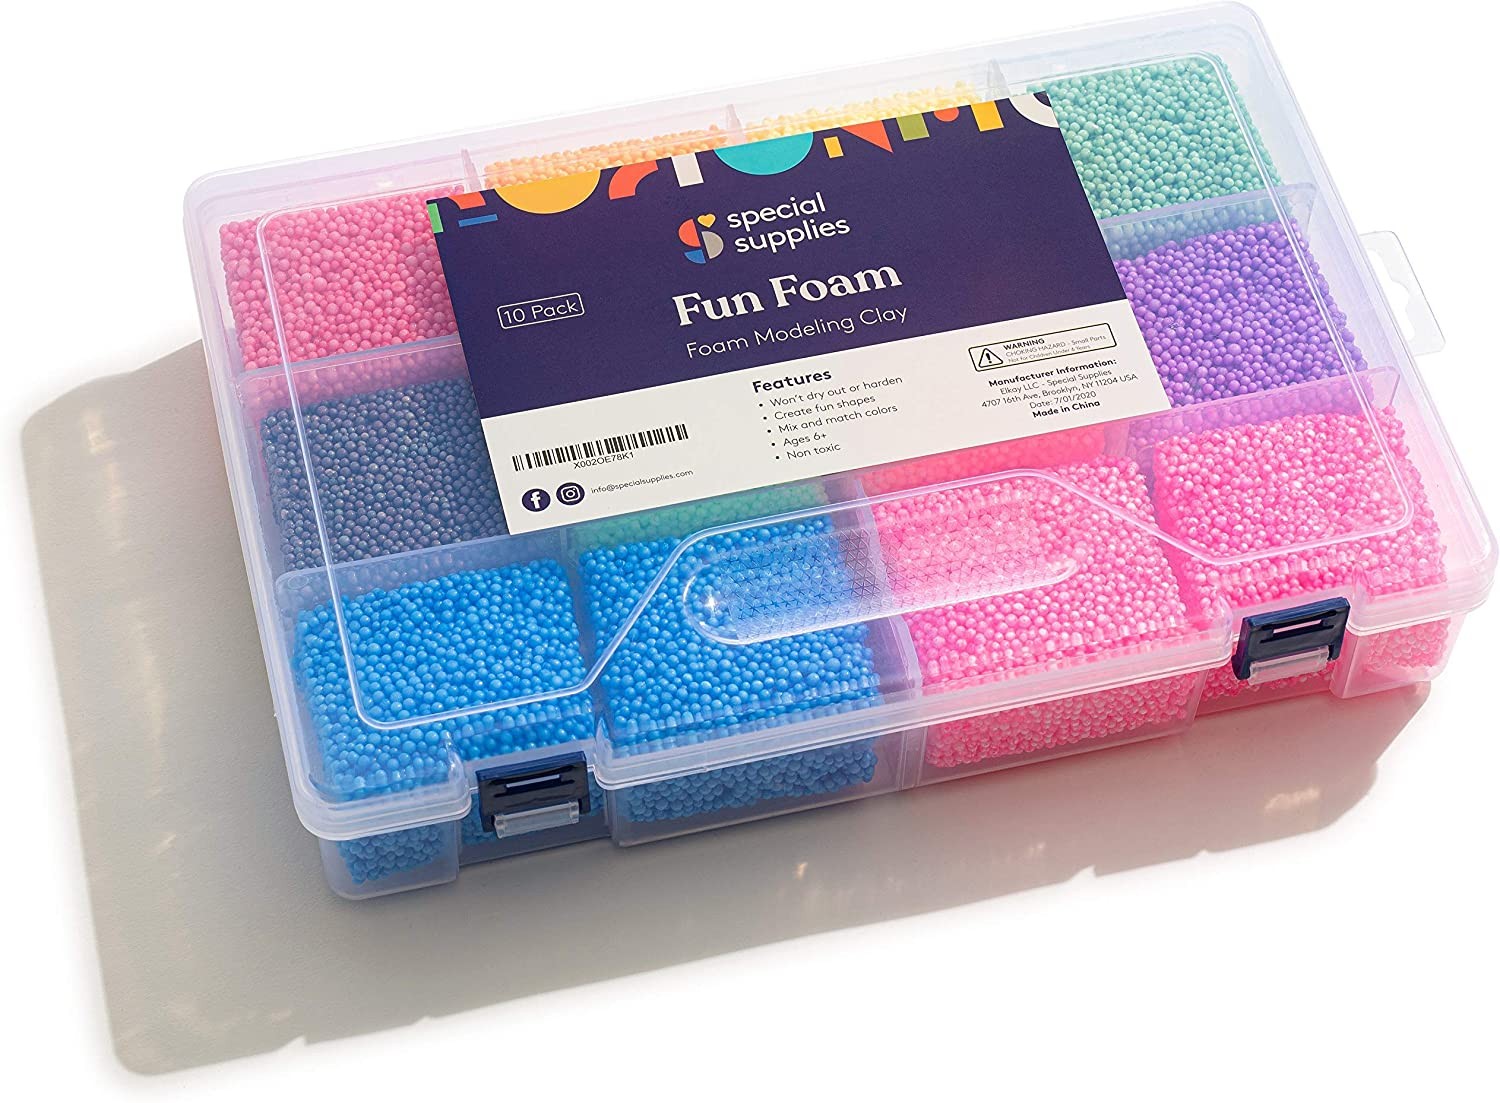 Special Supplies Fun Foam Modeling Foam Beads Play Kit, 5 Blocks  Children's